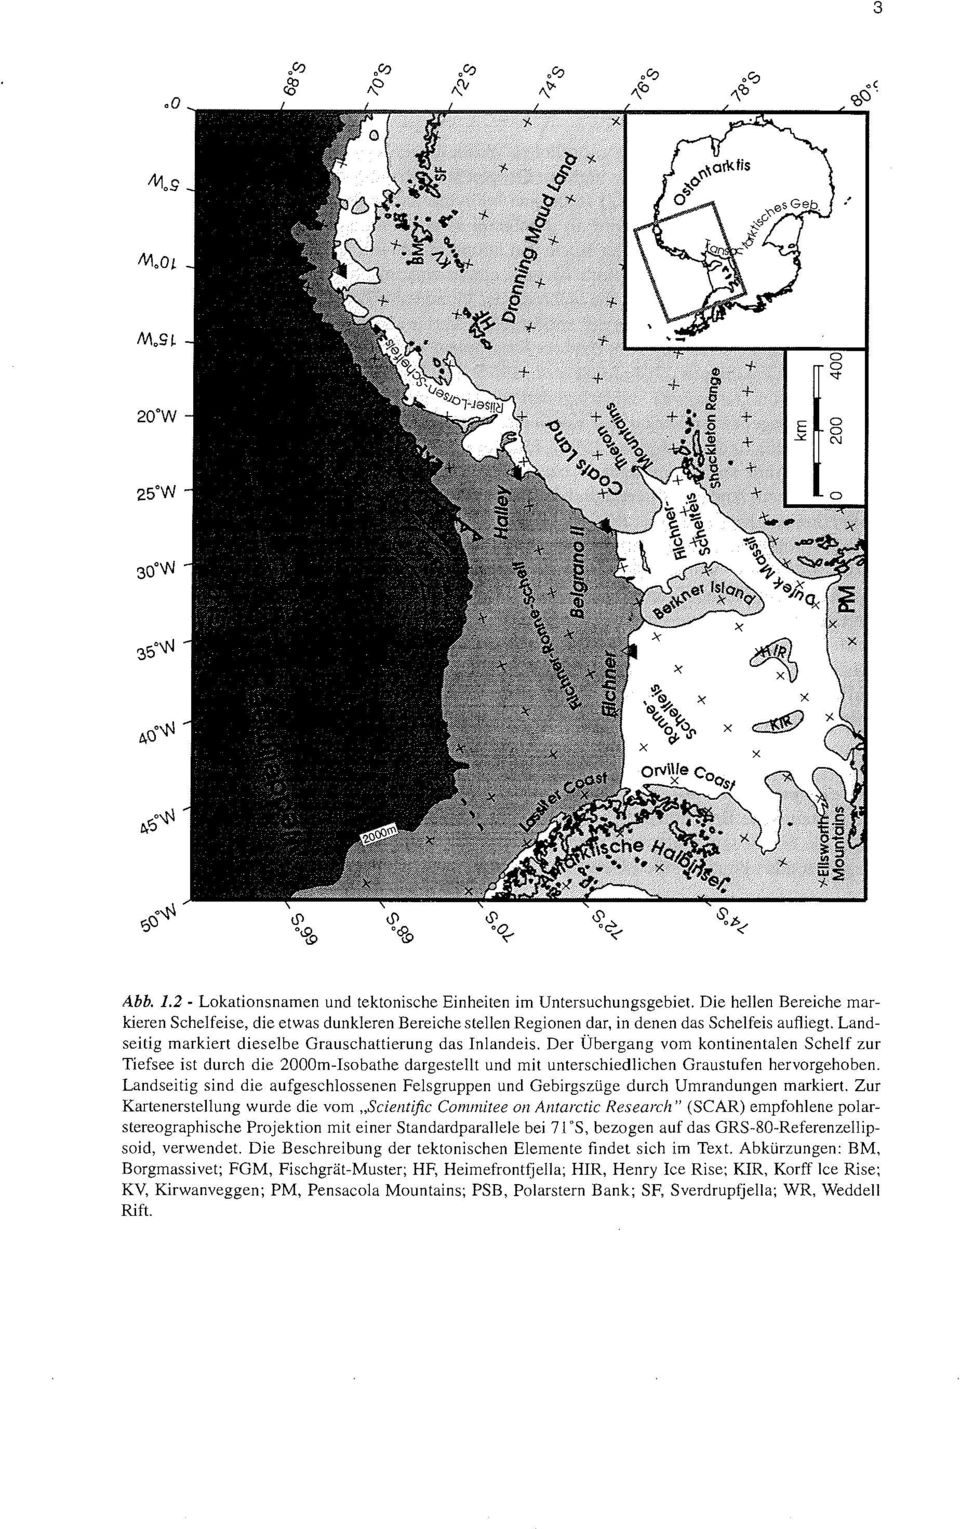 Der Ãœbergan vom kontinentalen Schelf zur Tiefsee ist durch die 2000m-Isobathe dargestellt und mit unterschiedlichen Graustufen hervorgehoben.